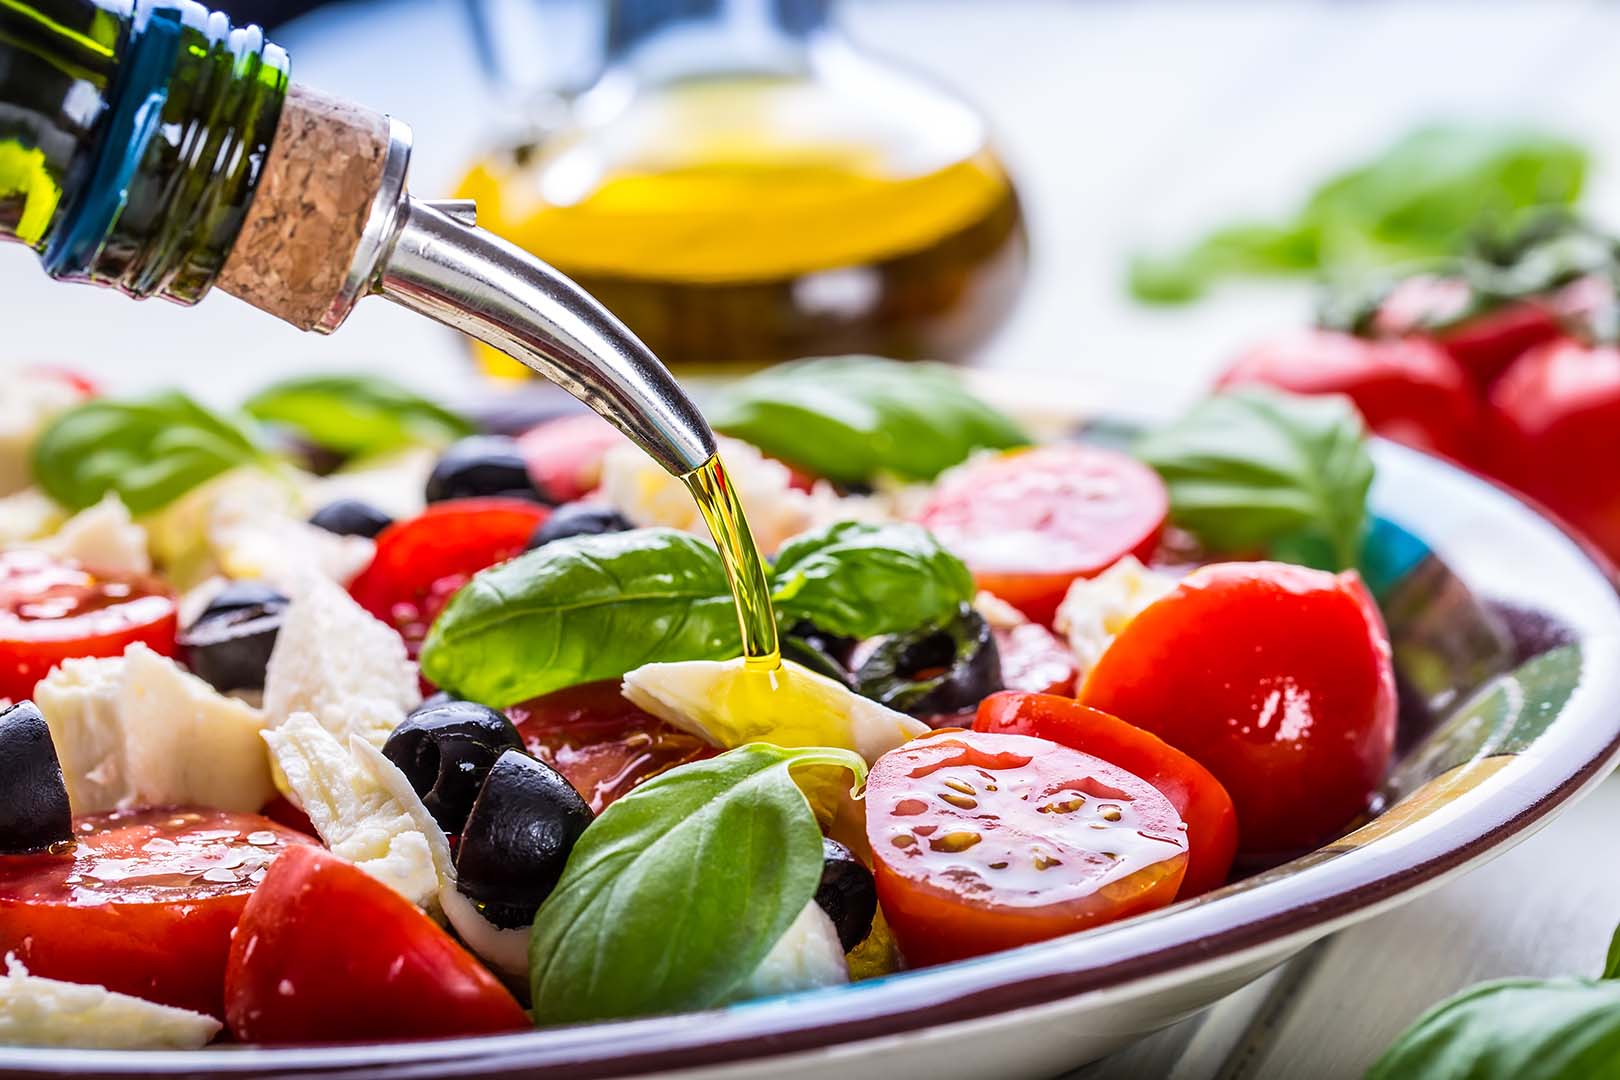 Las grasas favorables de la dieta mediterránea y sus beneficios para la salud3 min read